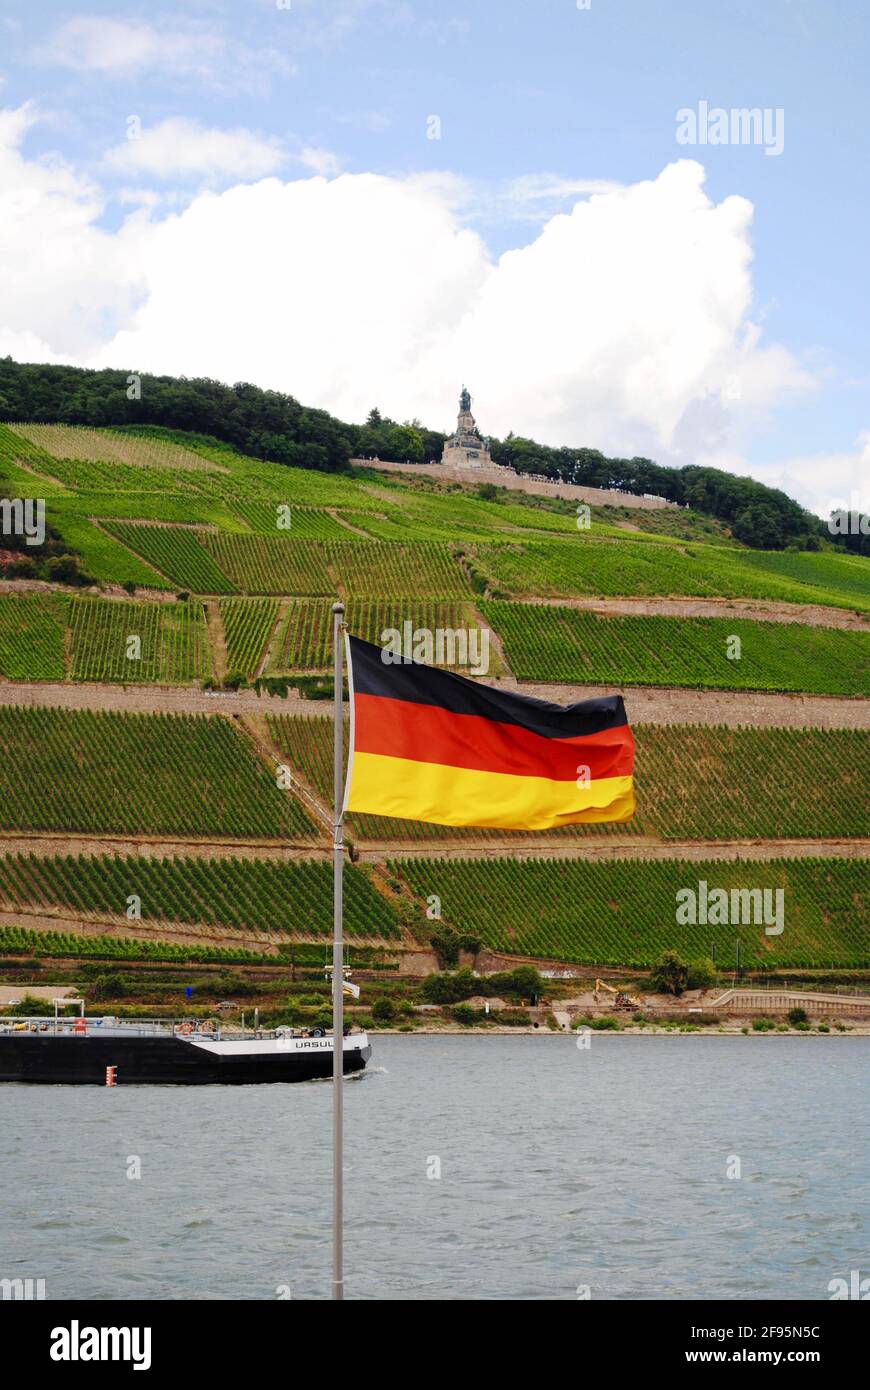 Bingen am Rhein, Allemagne: Rhin avec un bateau, drapeau allemand et vignobles. Niederwalddenkmal, statue de Germania, monument de la réunification allemande. Banque D'Images